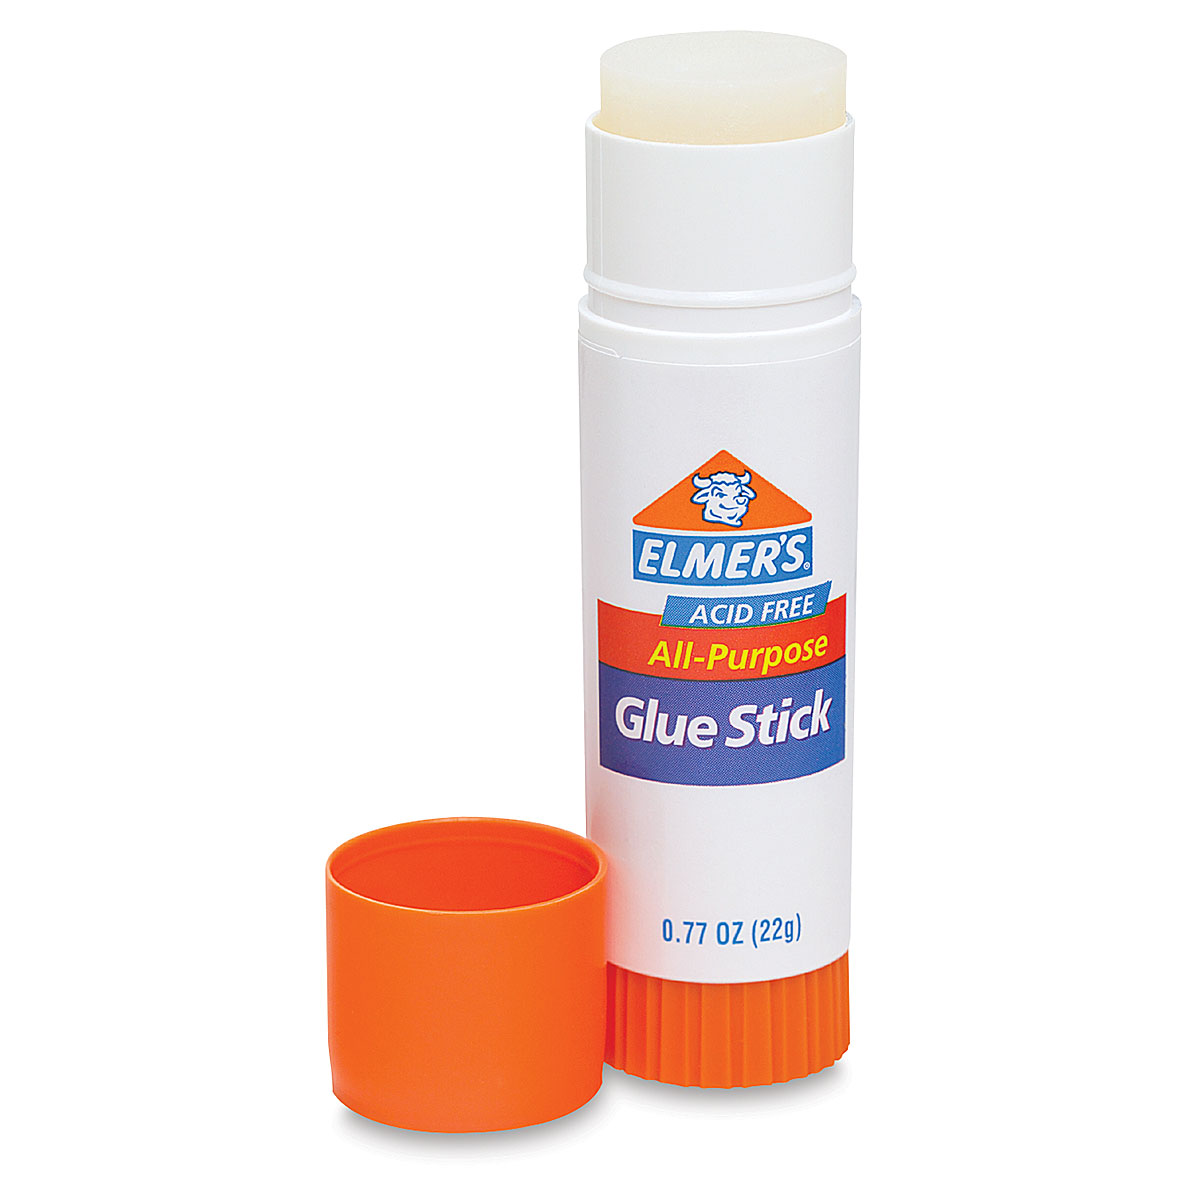 Elmer's Glue-All Multi-Purpose Glue - 16 oz